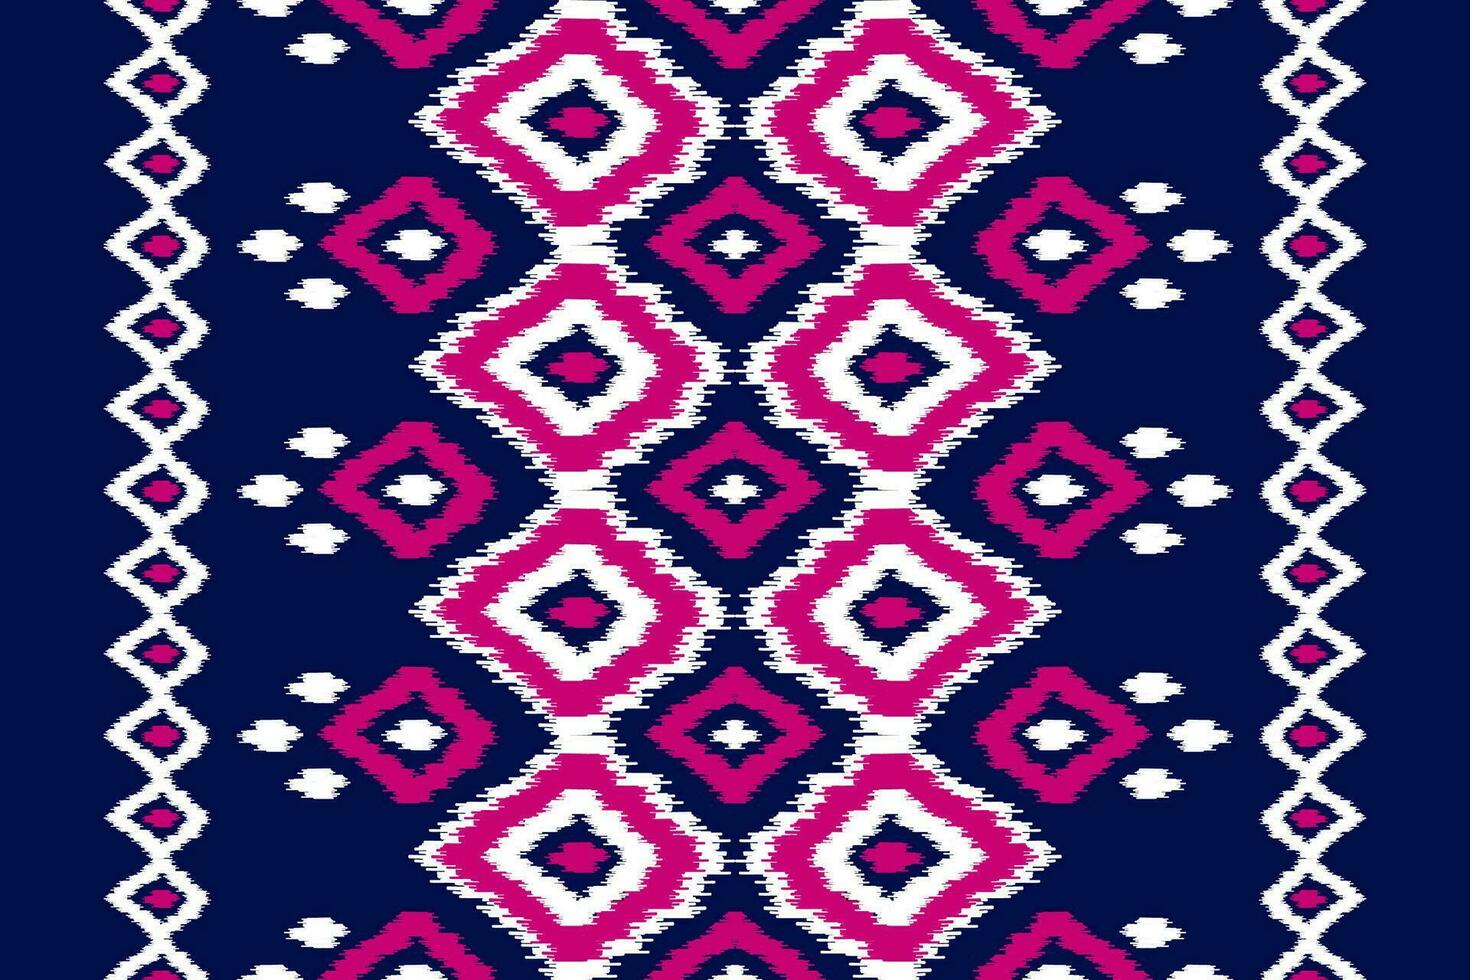 arte de patrón tribal étnico de alfombras. patrón étnico ikat sin fisuras. estilo americano, mexicano. vector